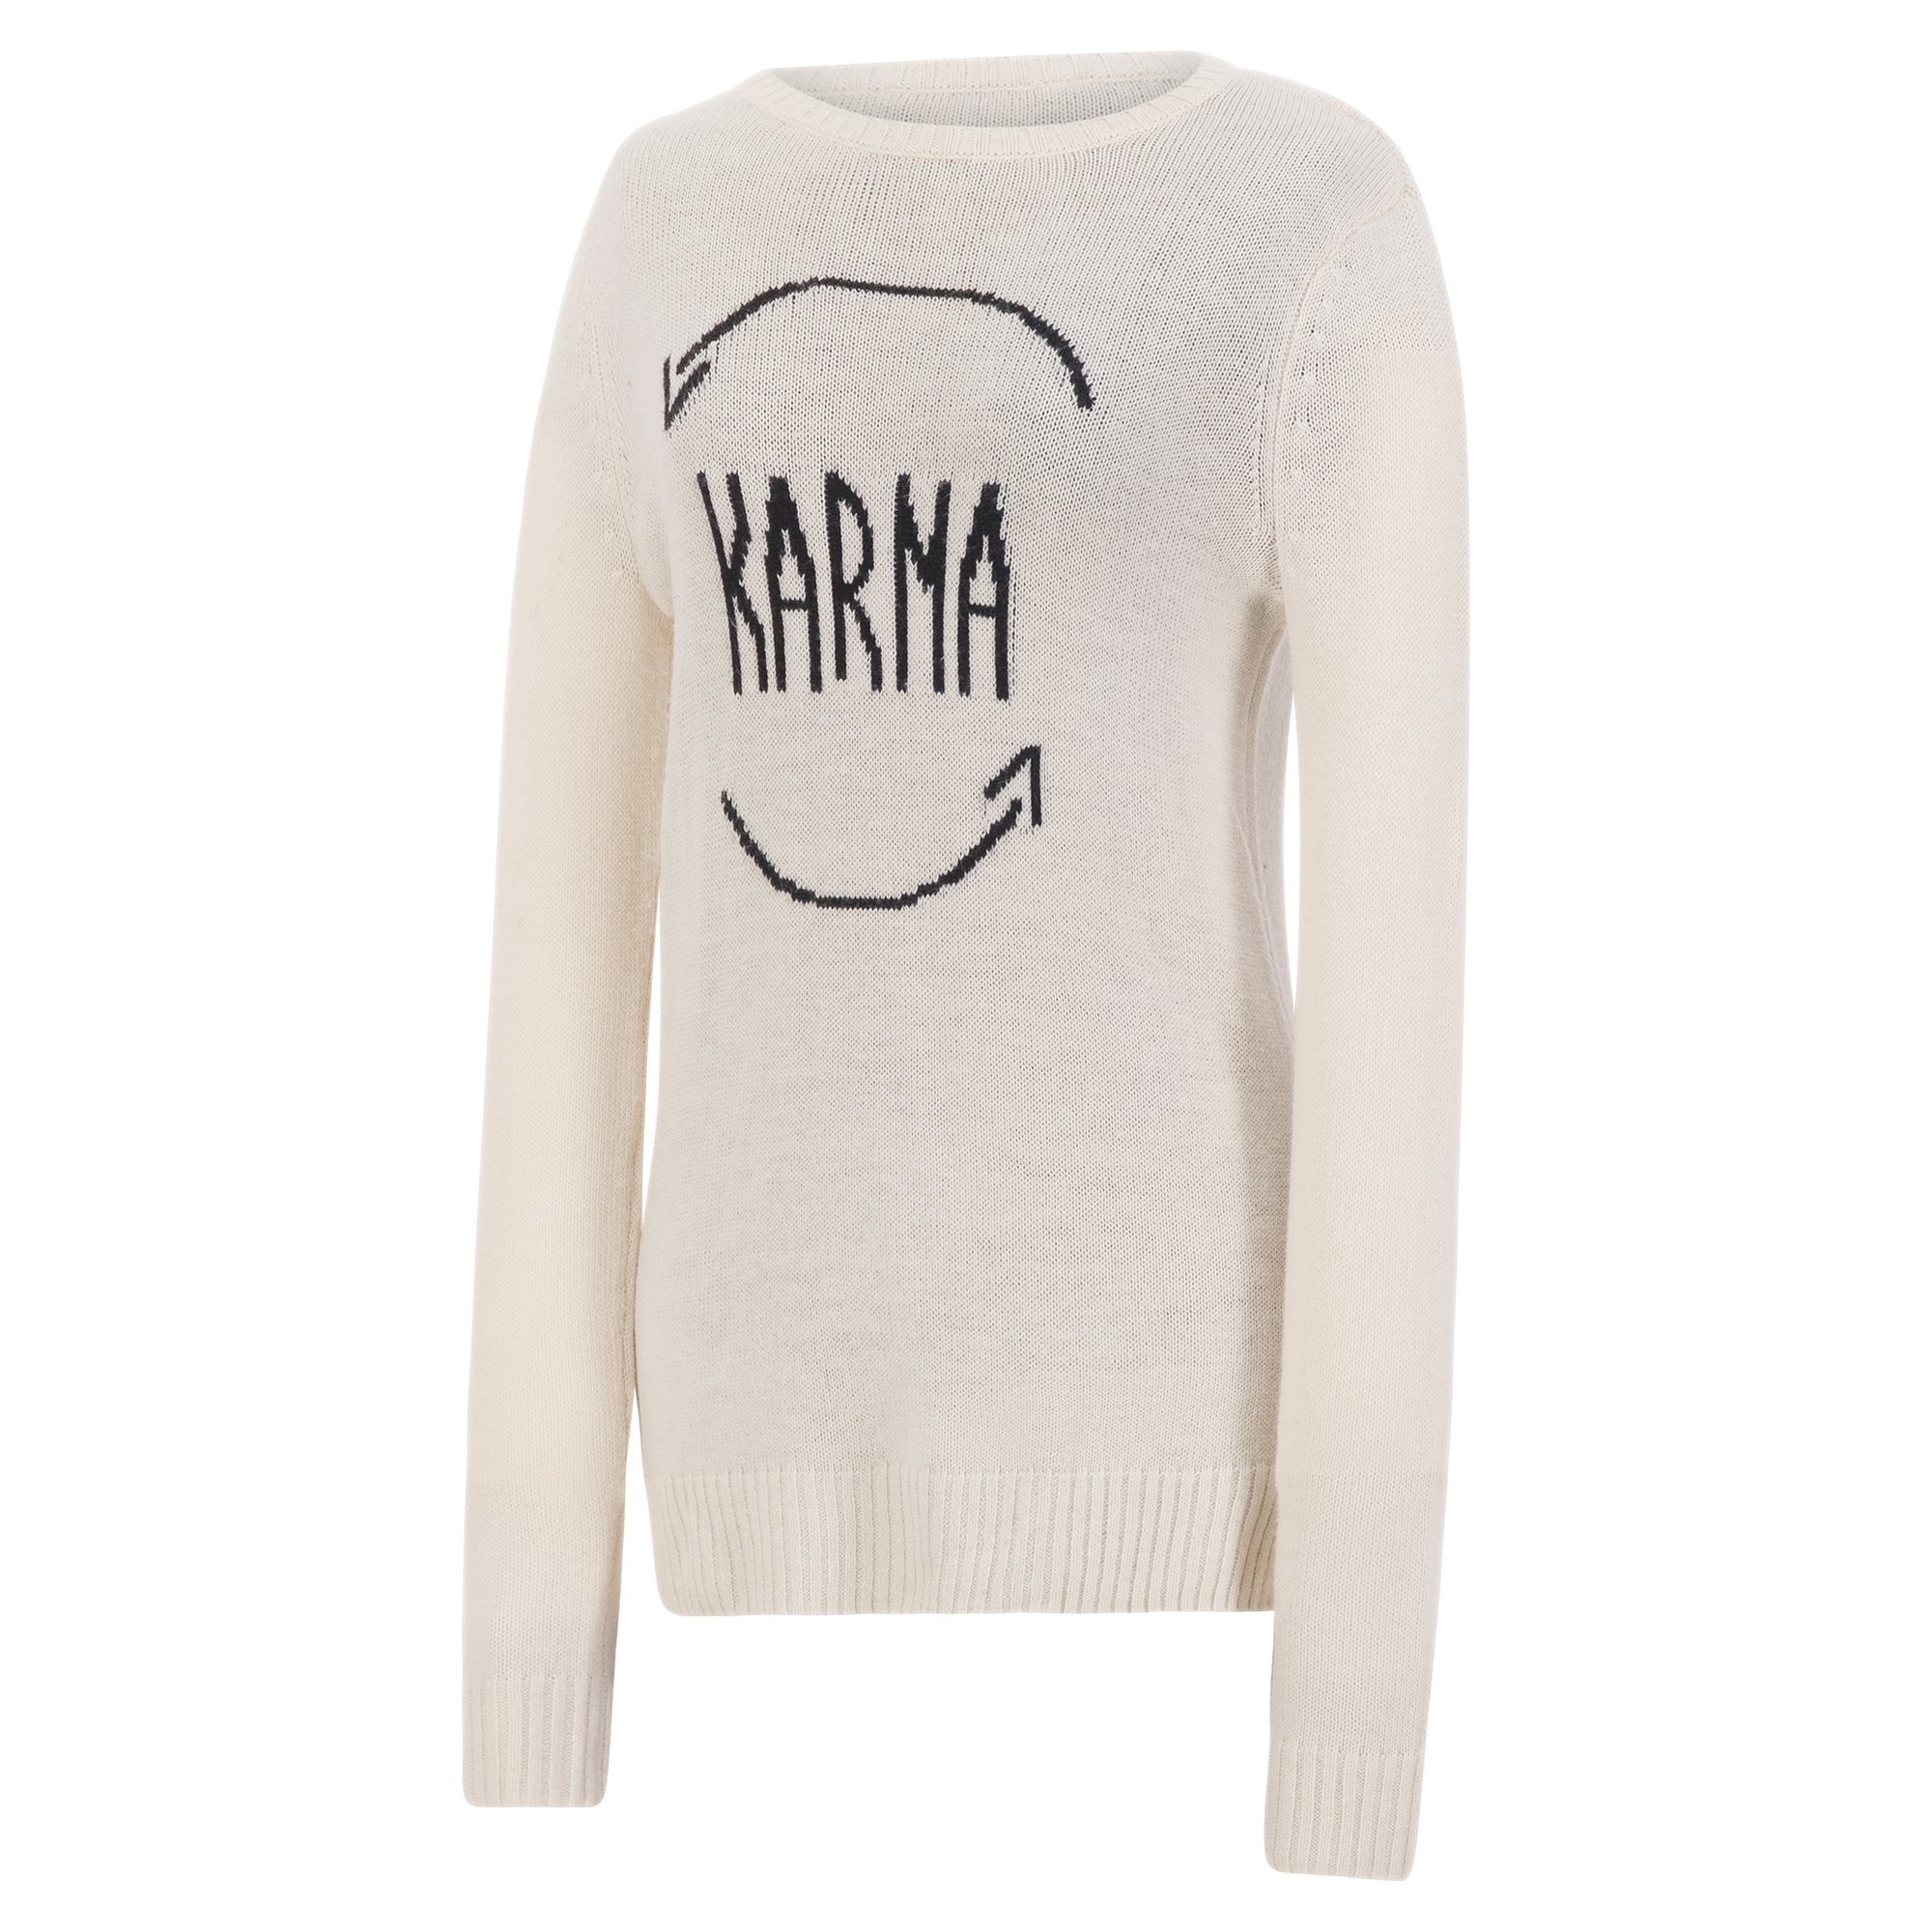 BCBG Maxazria "karma" crewneck sweater